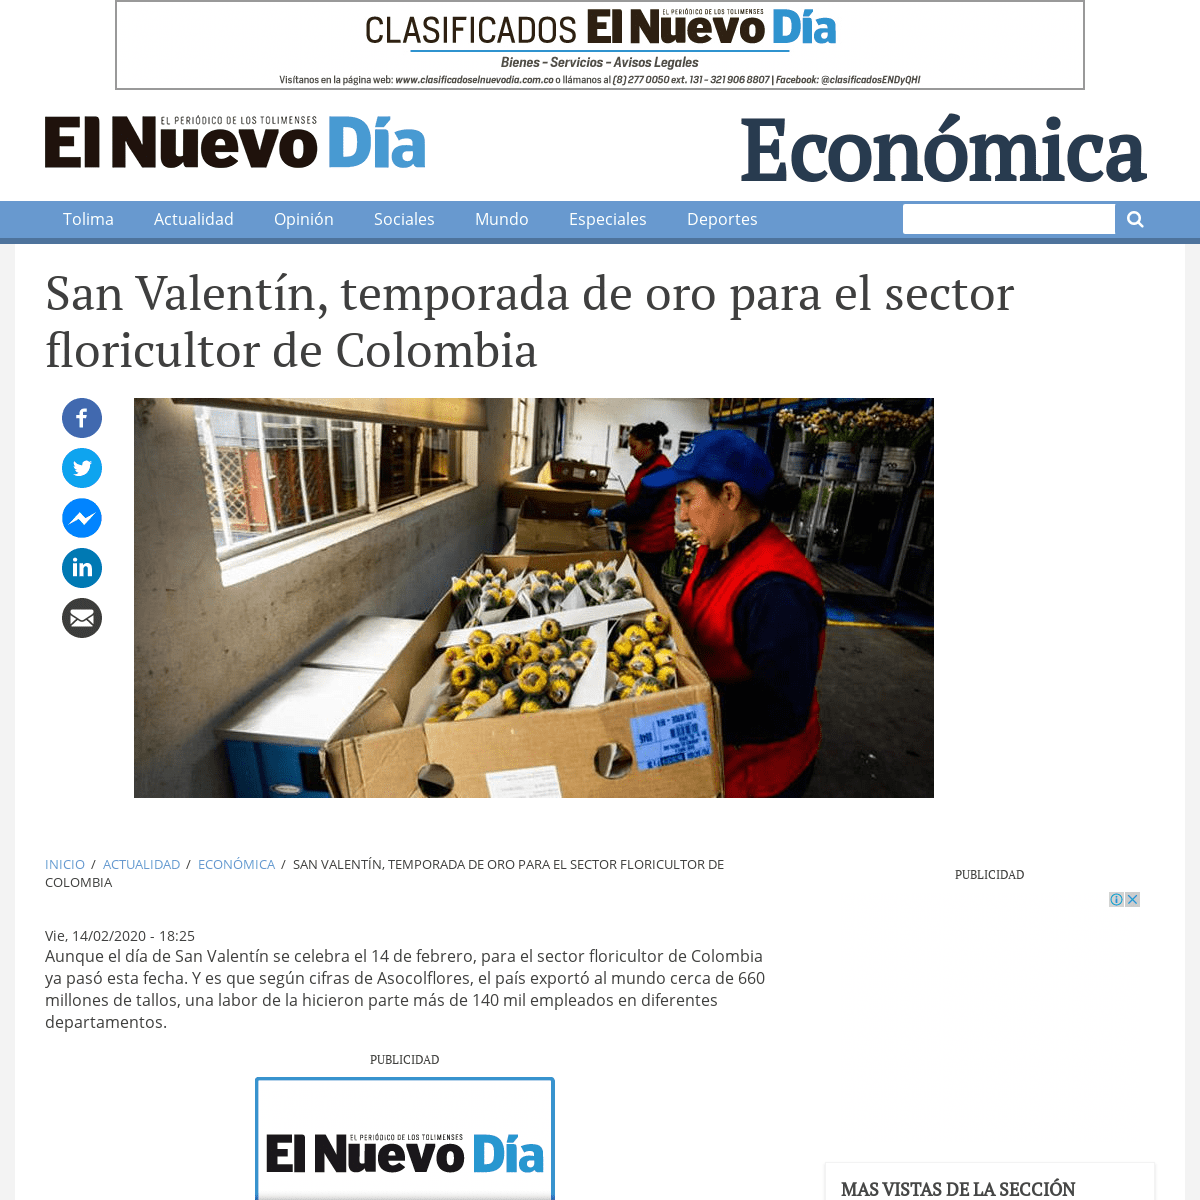 A complete backup of www.elnuevodia.com.co/nuevodia/actualidad/economica/445278-san-valentin-temporada-de-oro-para-el-sector-flo